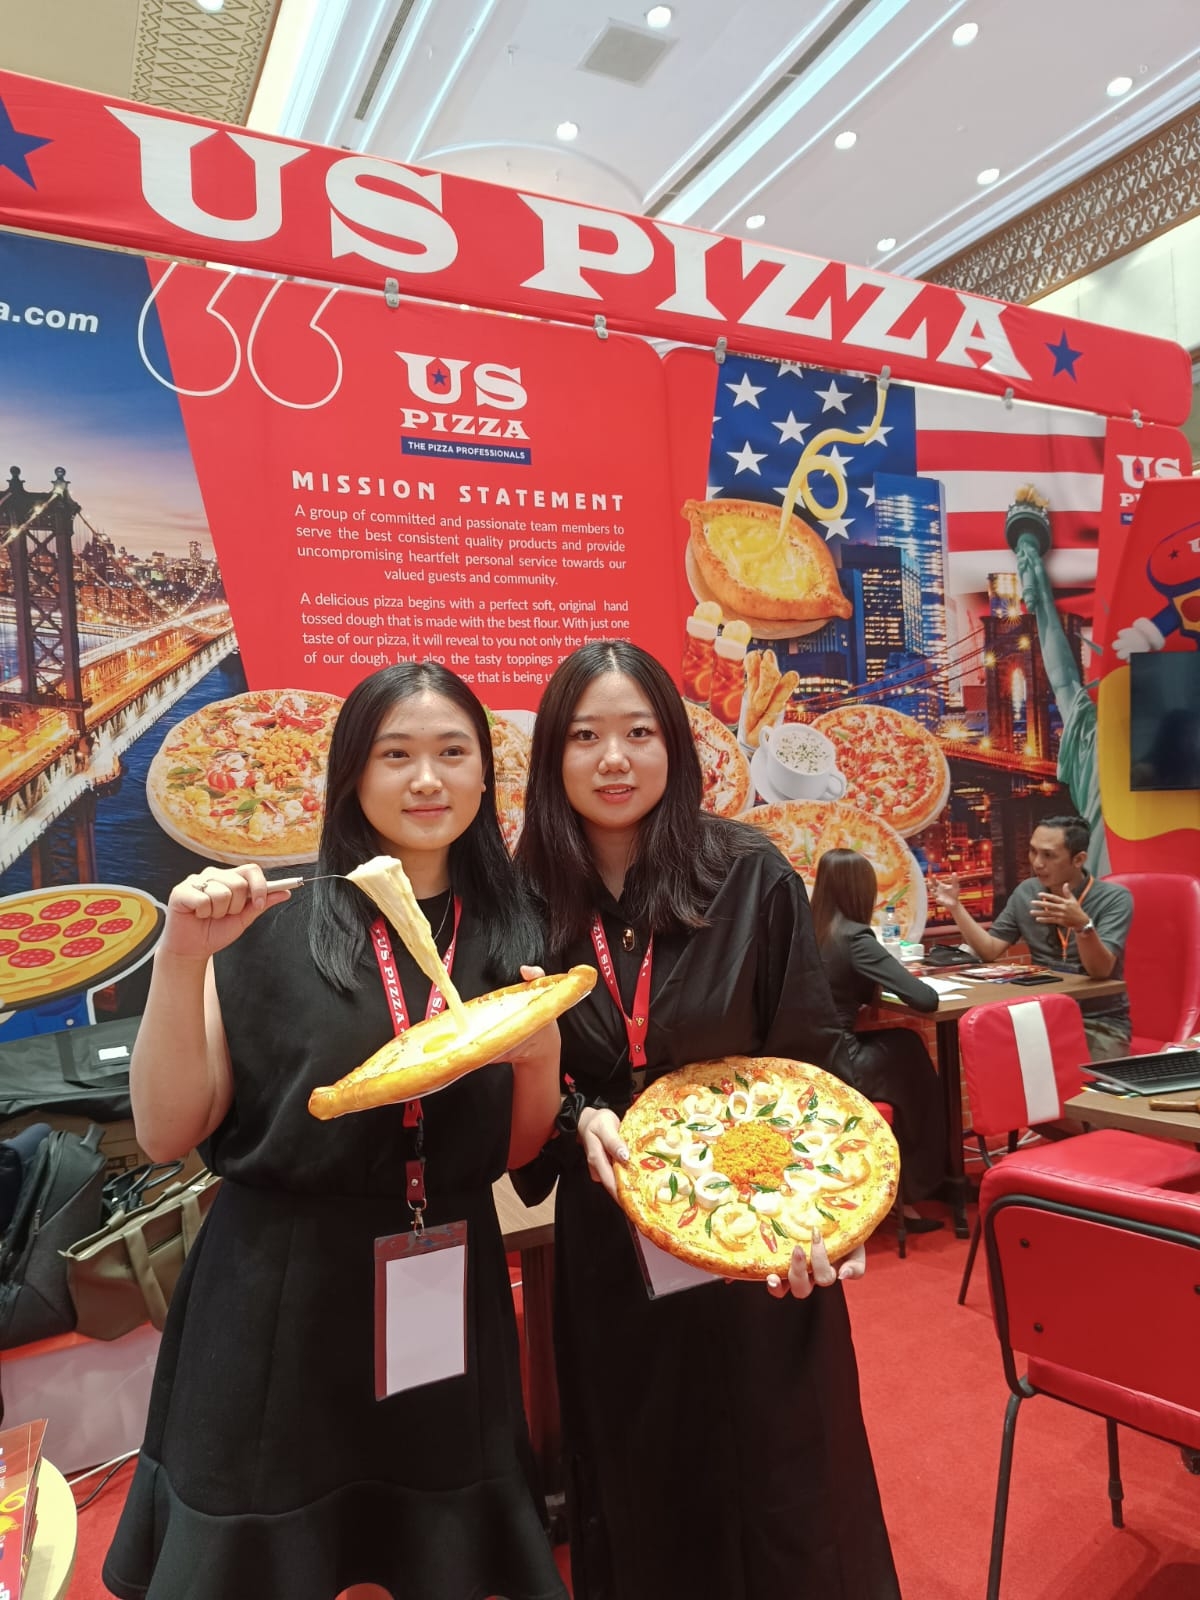 Menengok Peluang Bisnis Pizza Asal Negeri Jiran yang Viral di Tiktok